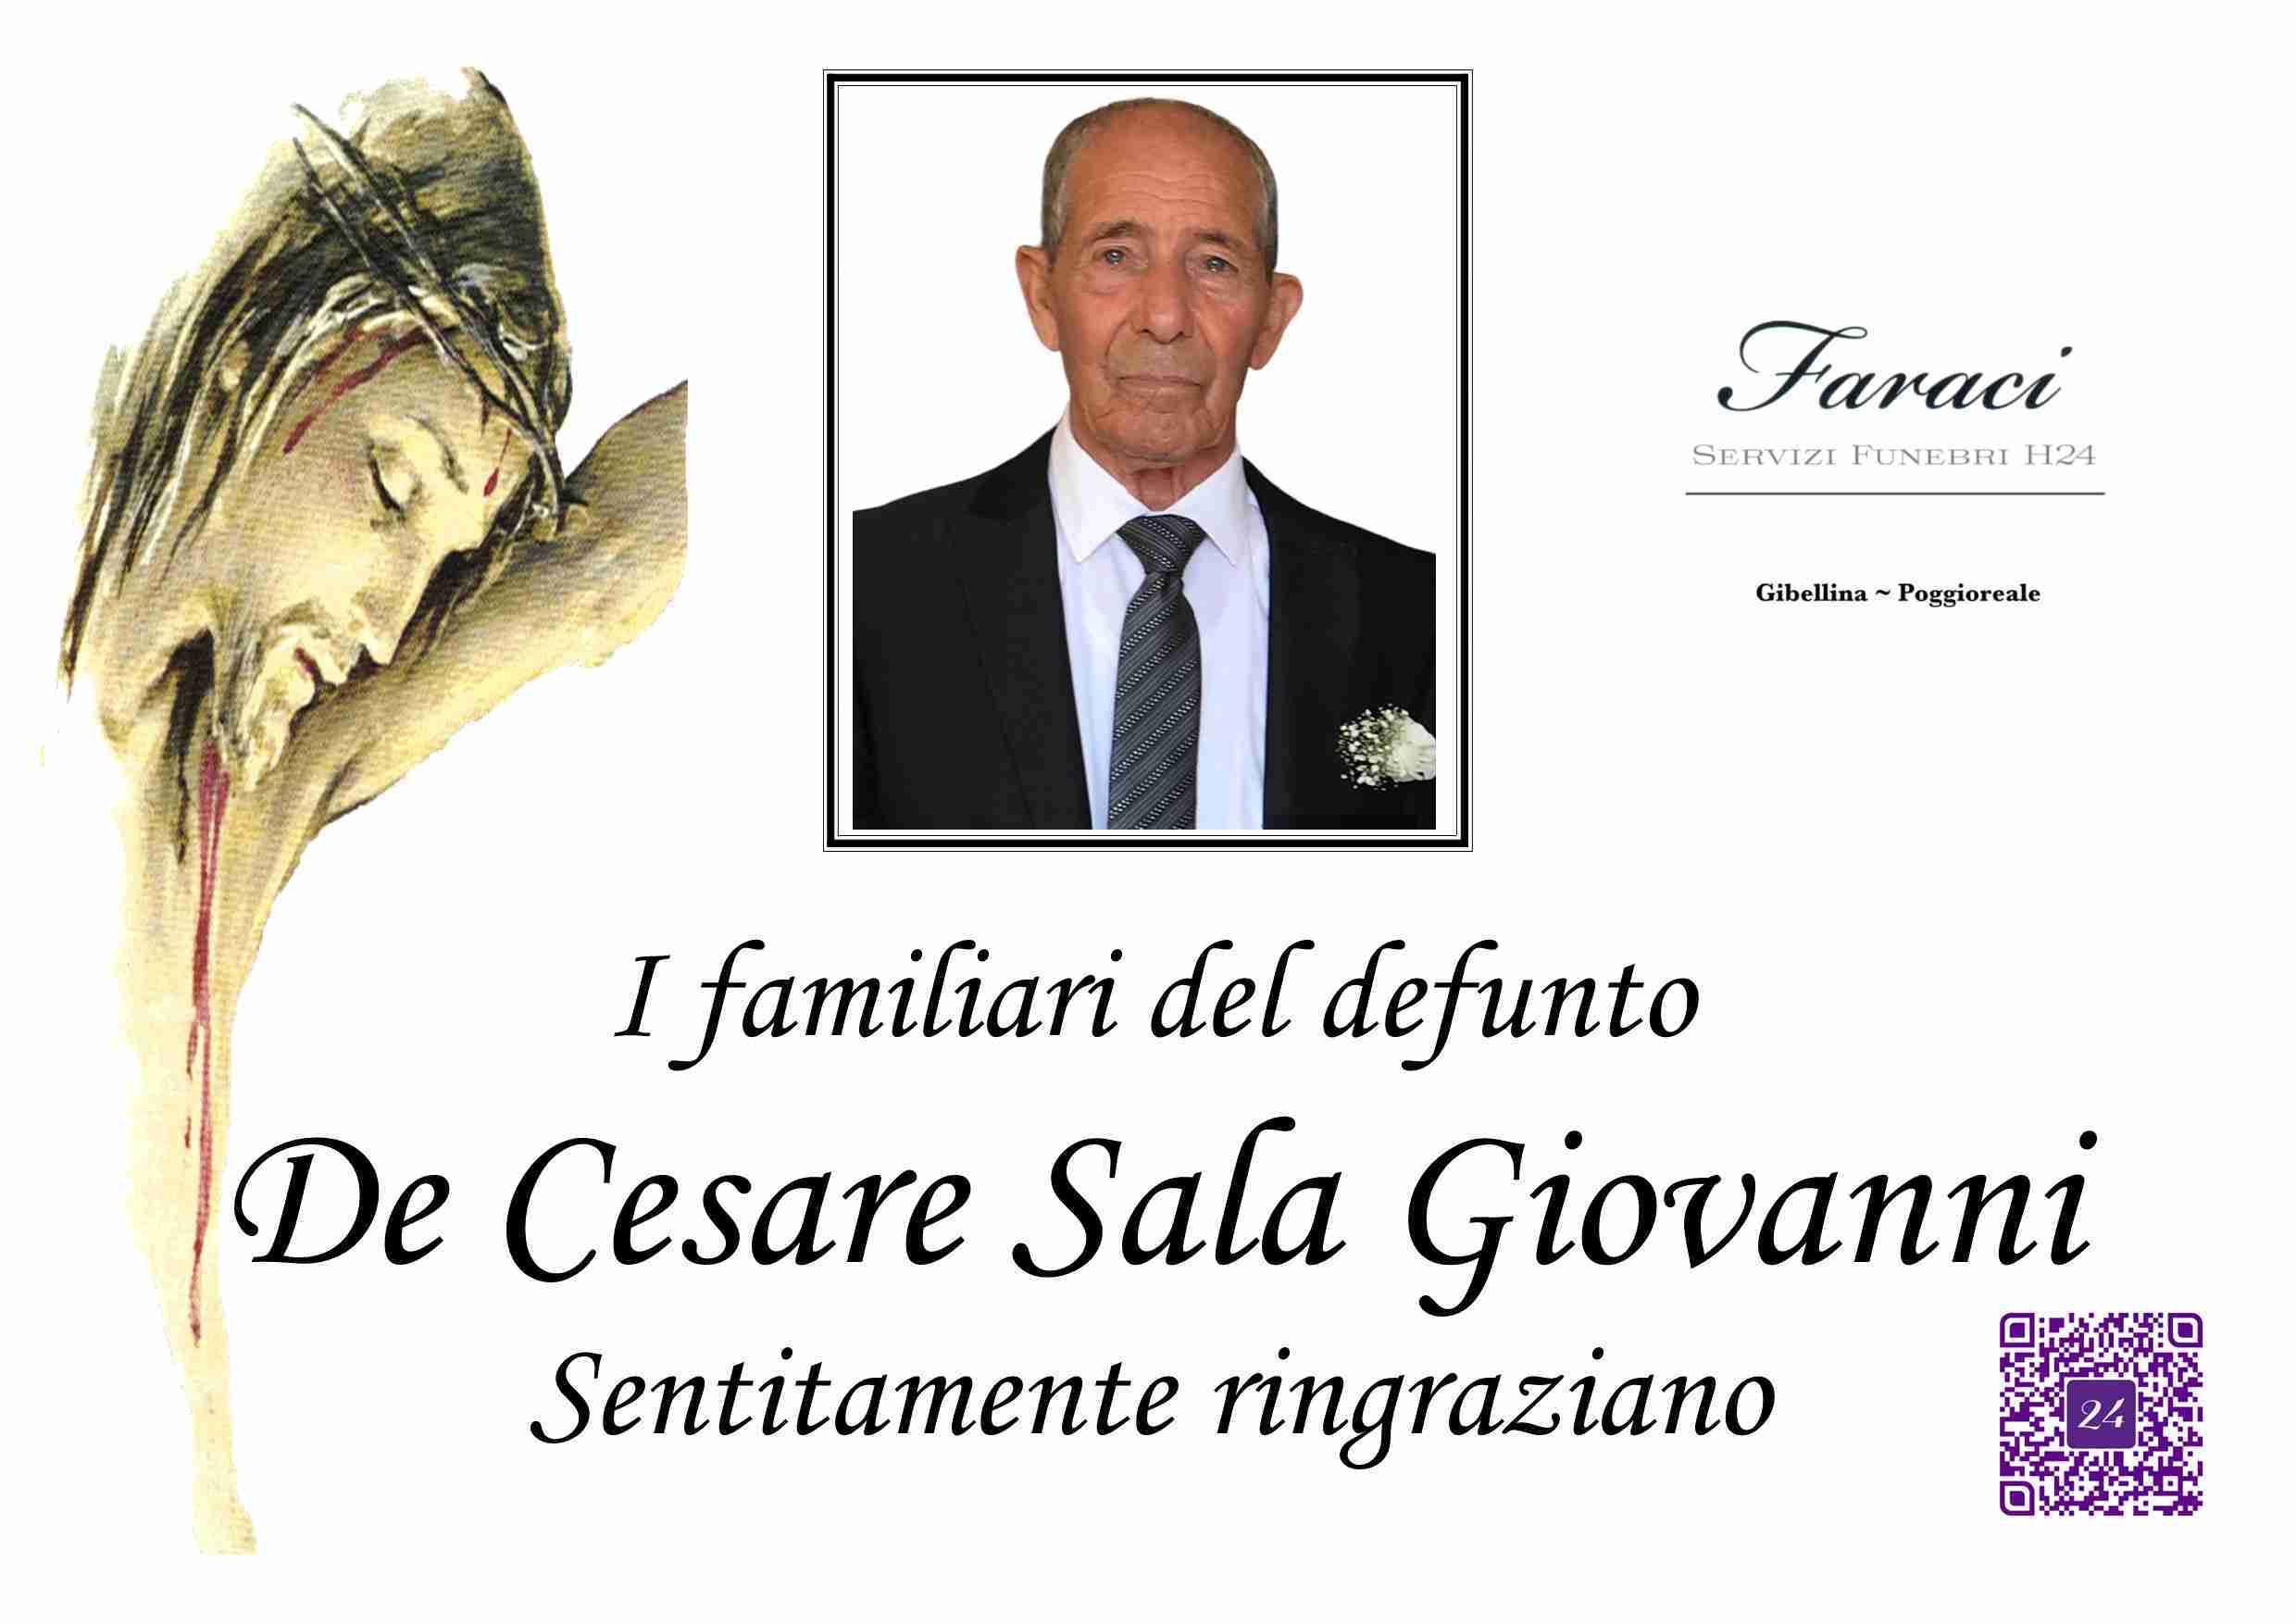 Giovanni De Cesare Sala